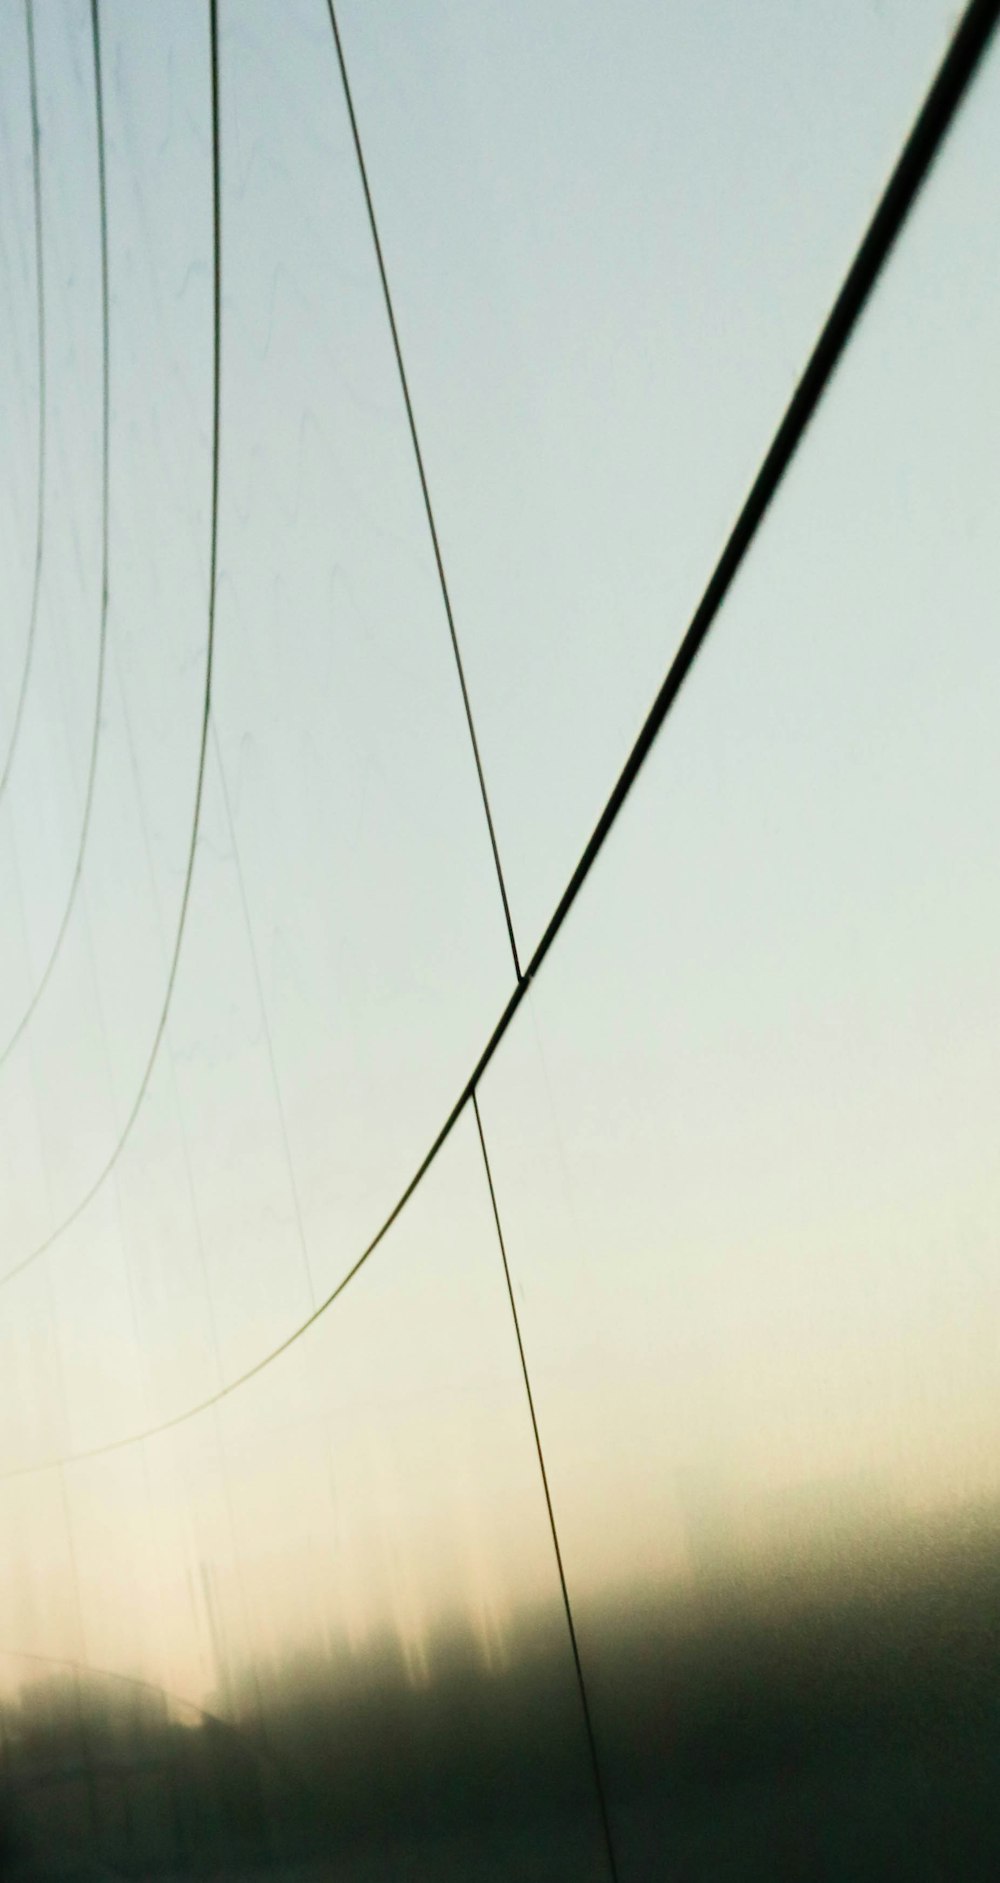 Una foto borrosa de un poste telefónico y cables